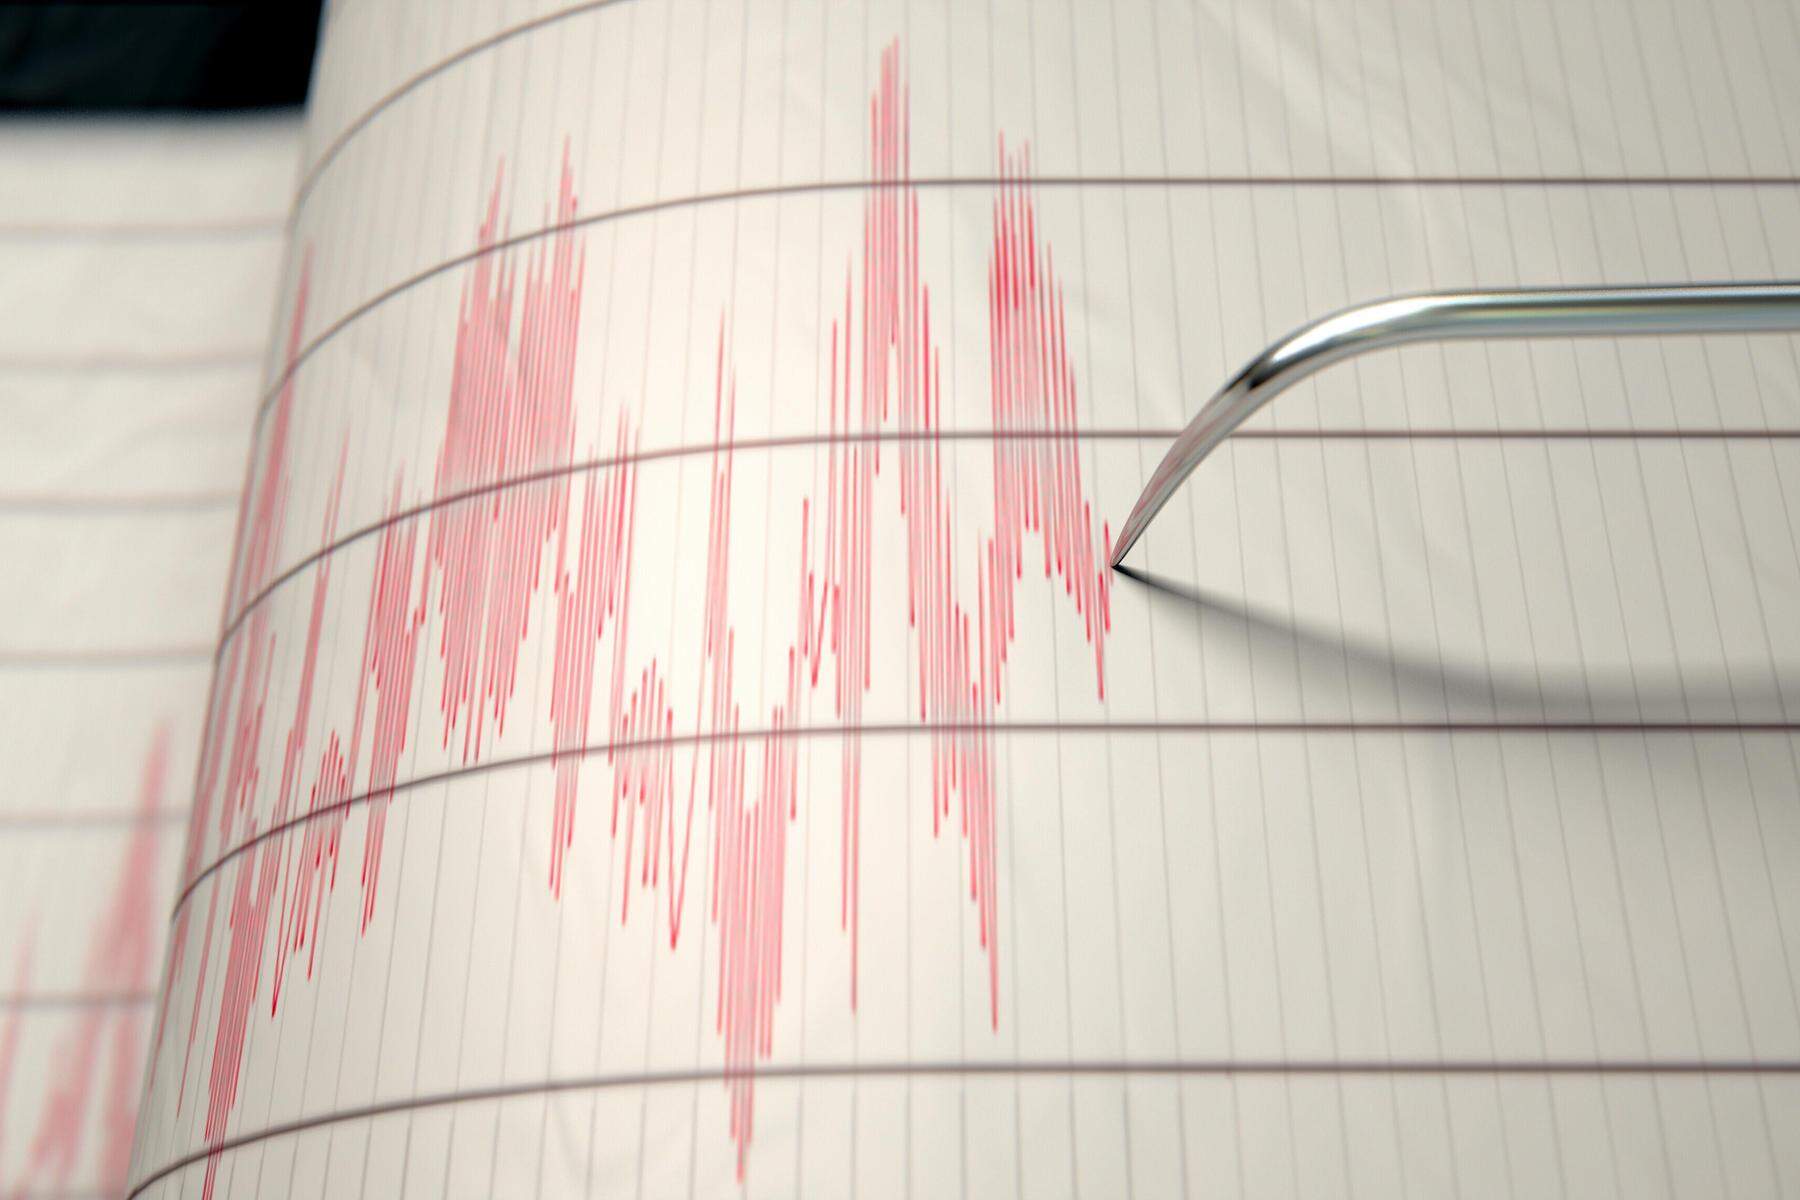 Stärke 2,1: Leichtes Erdbeben in der Nähe von Leoben gemessen